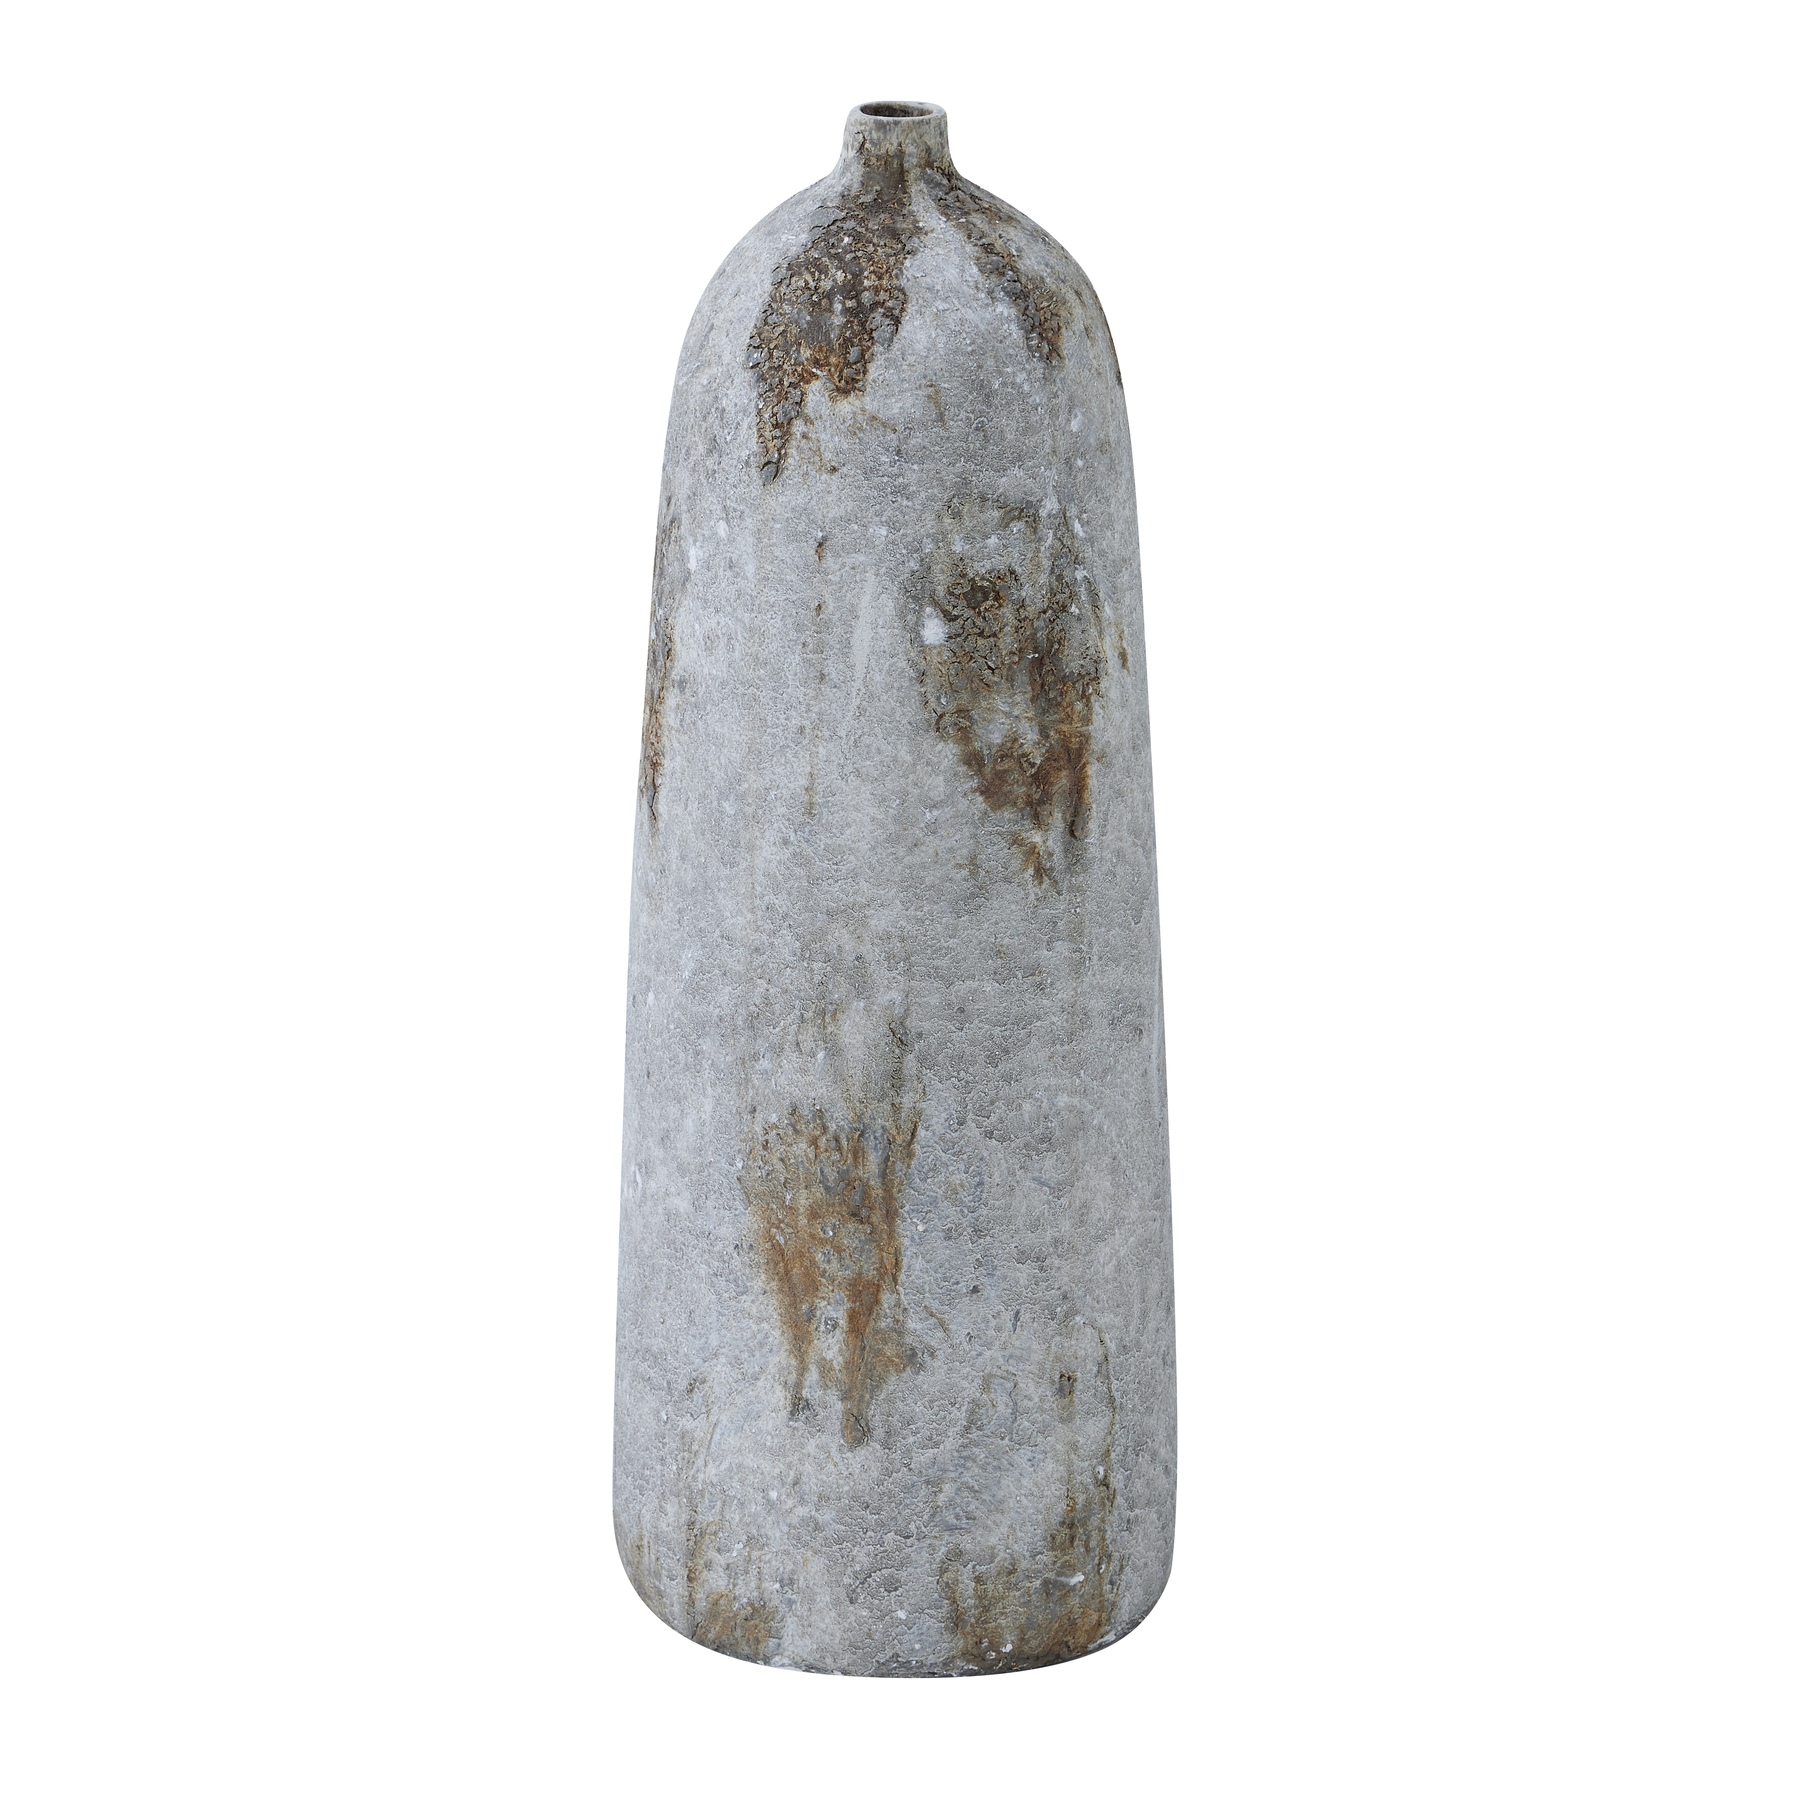 Aged Stone Bottle Vase - Image 1